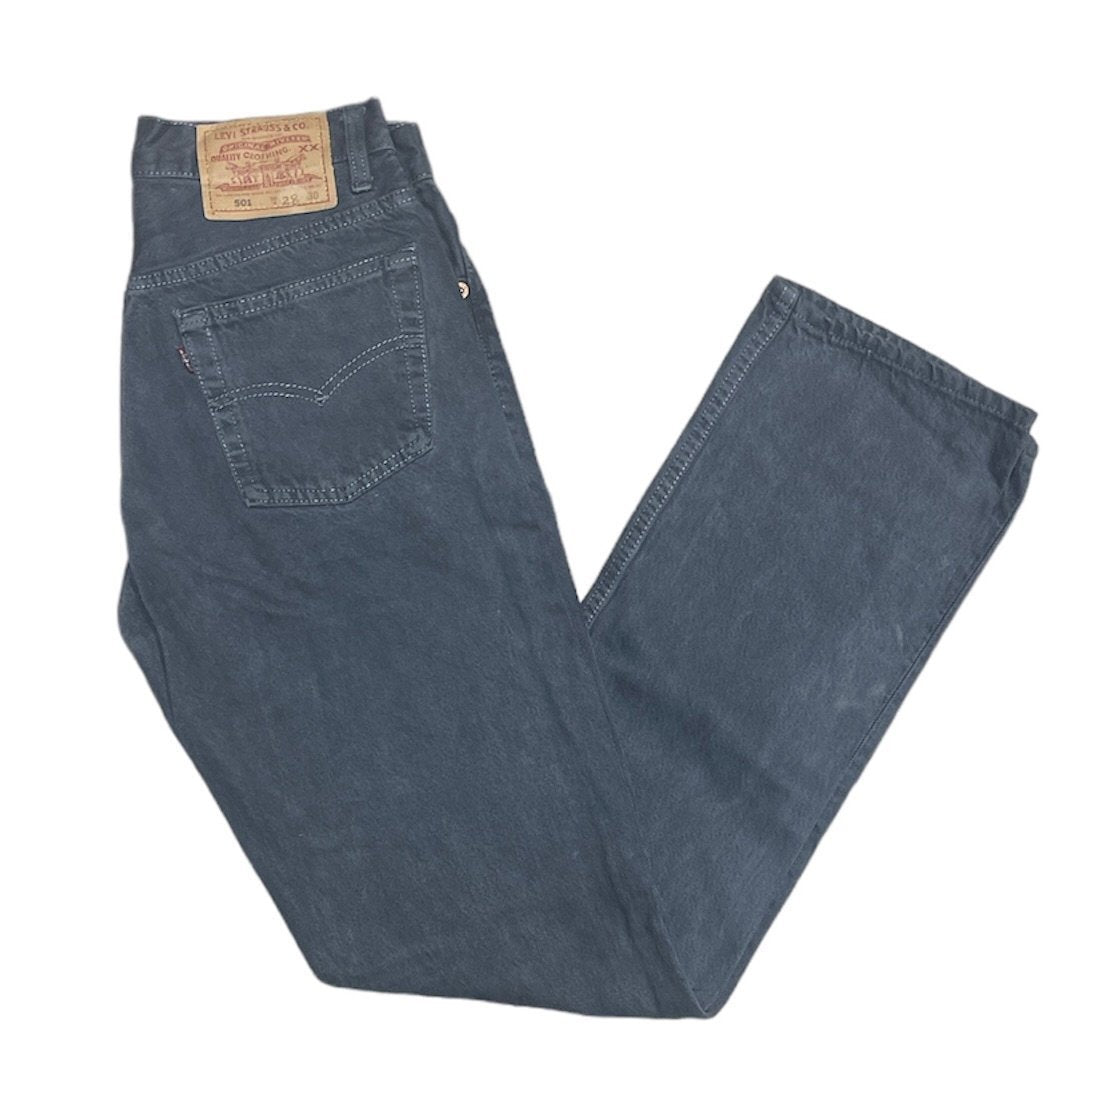 Vintage Levis 501 Grey Jeans (W28/L30)